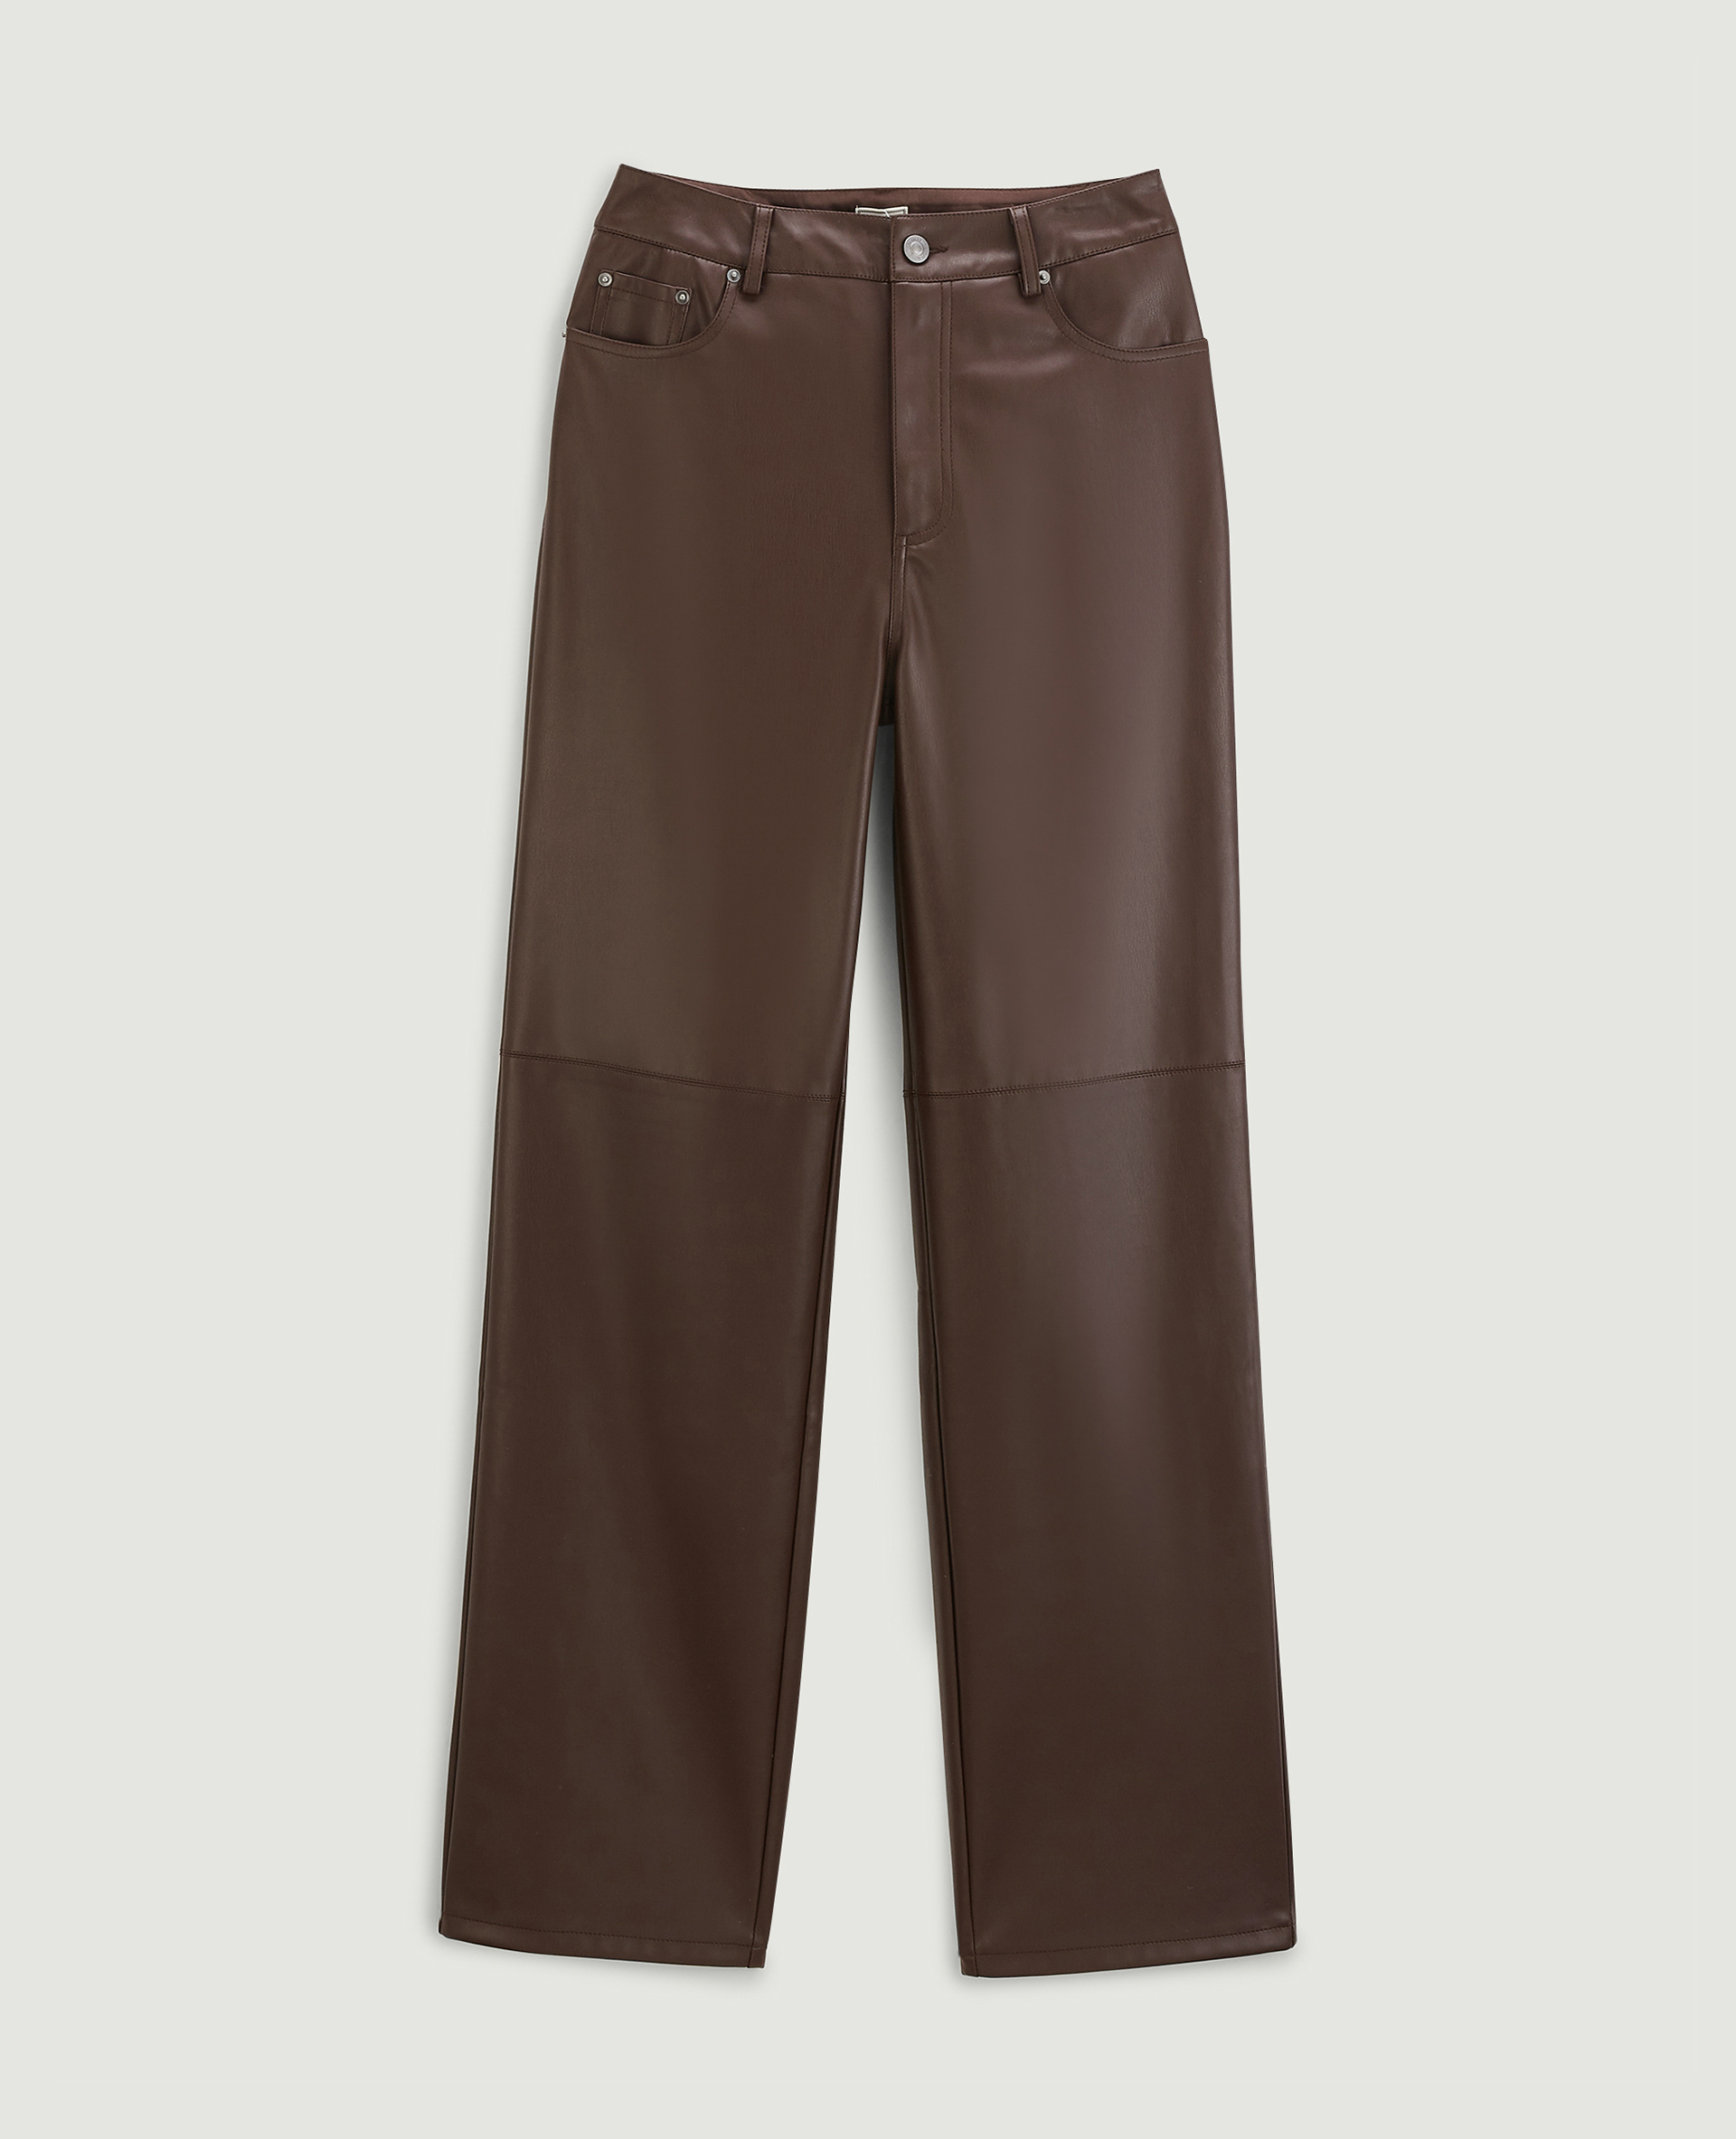 Pantalon droit en simili cuir marron - Pimkie